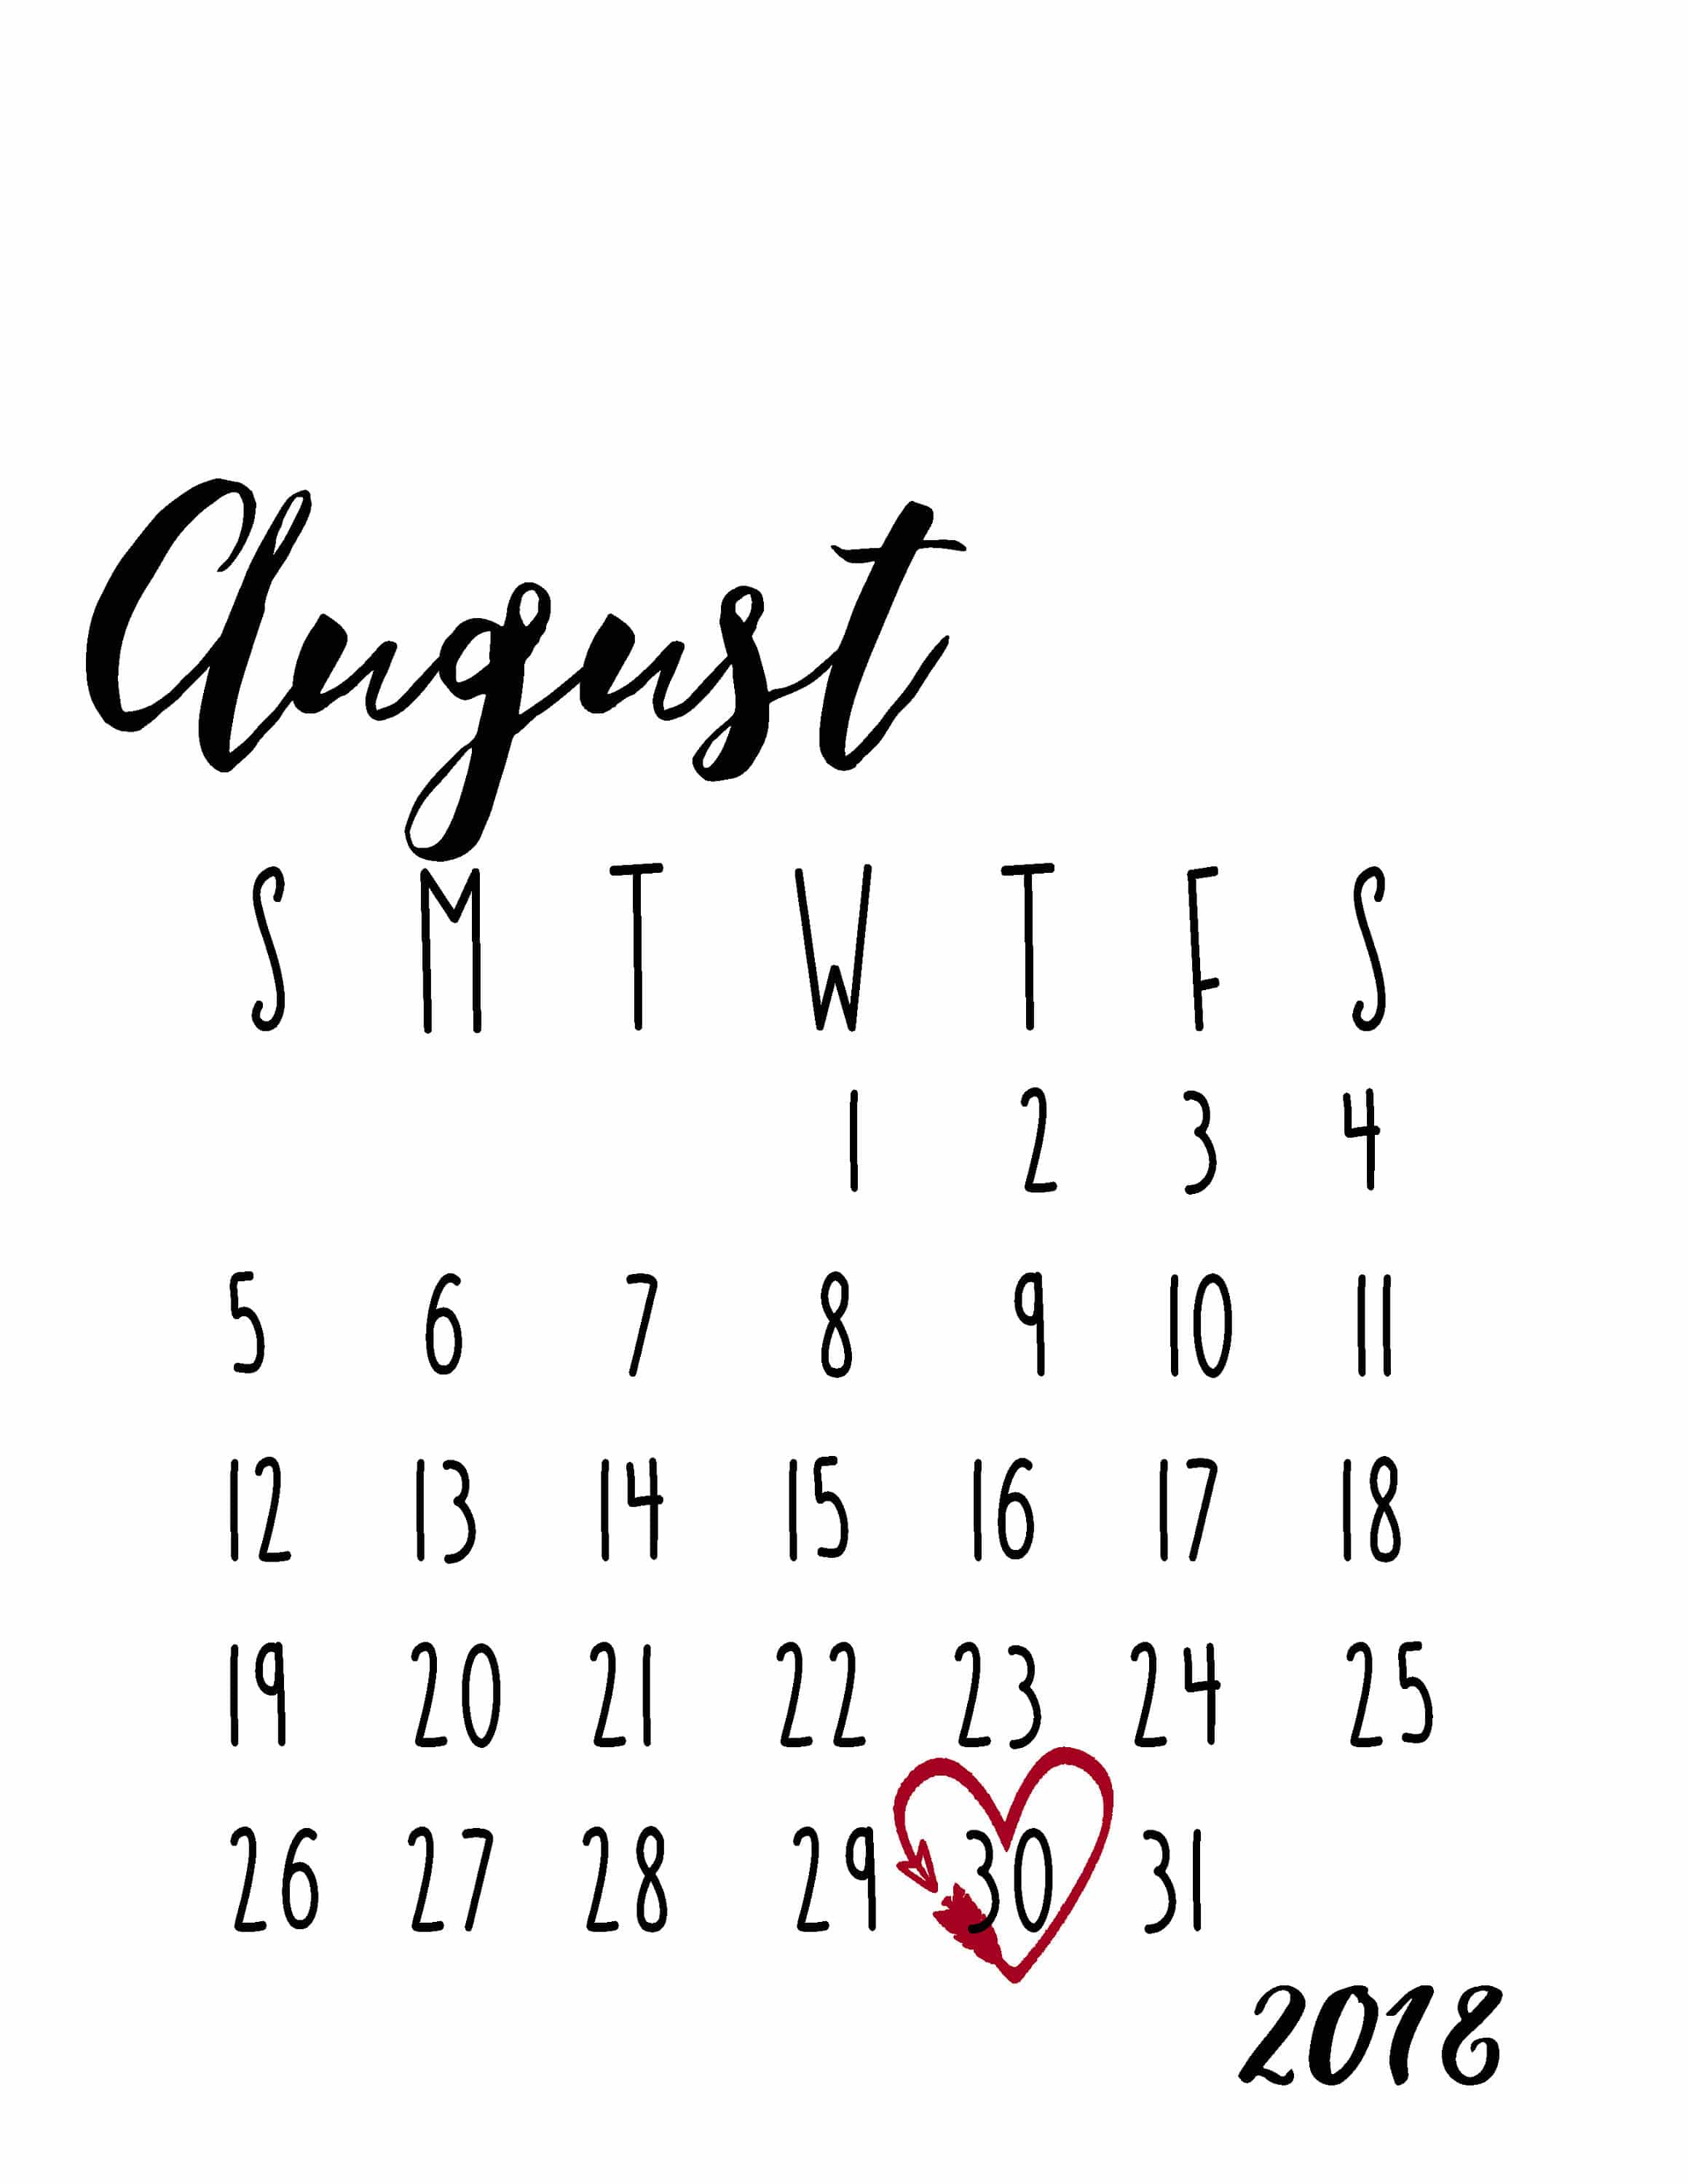 August 2018 Calendar 